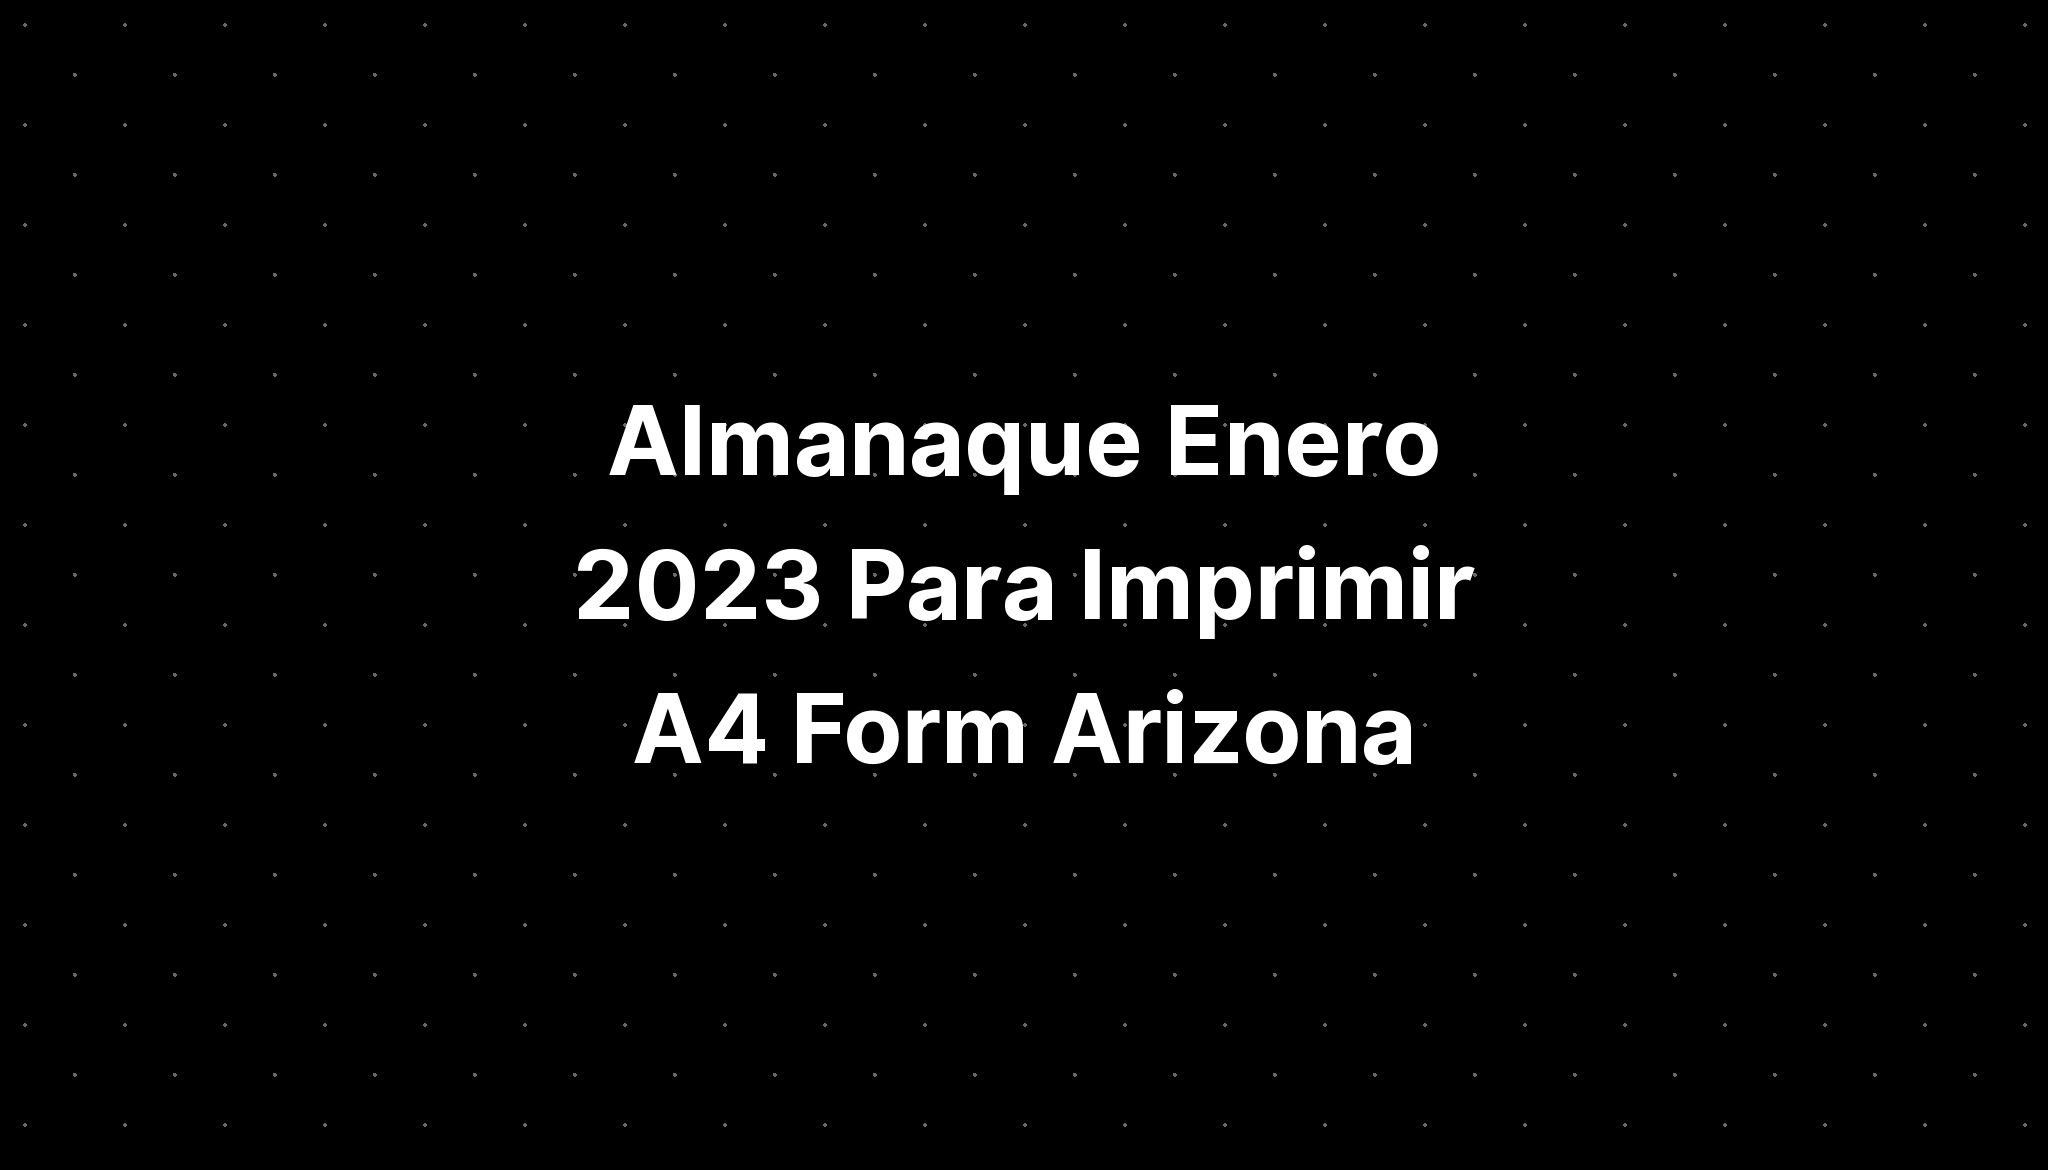 almanaque-enero-2023-para-imprimir-a4-form-arizona-imagesee